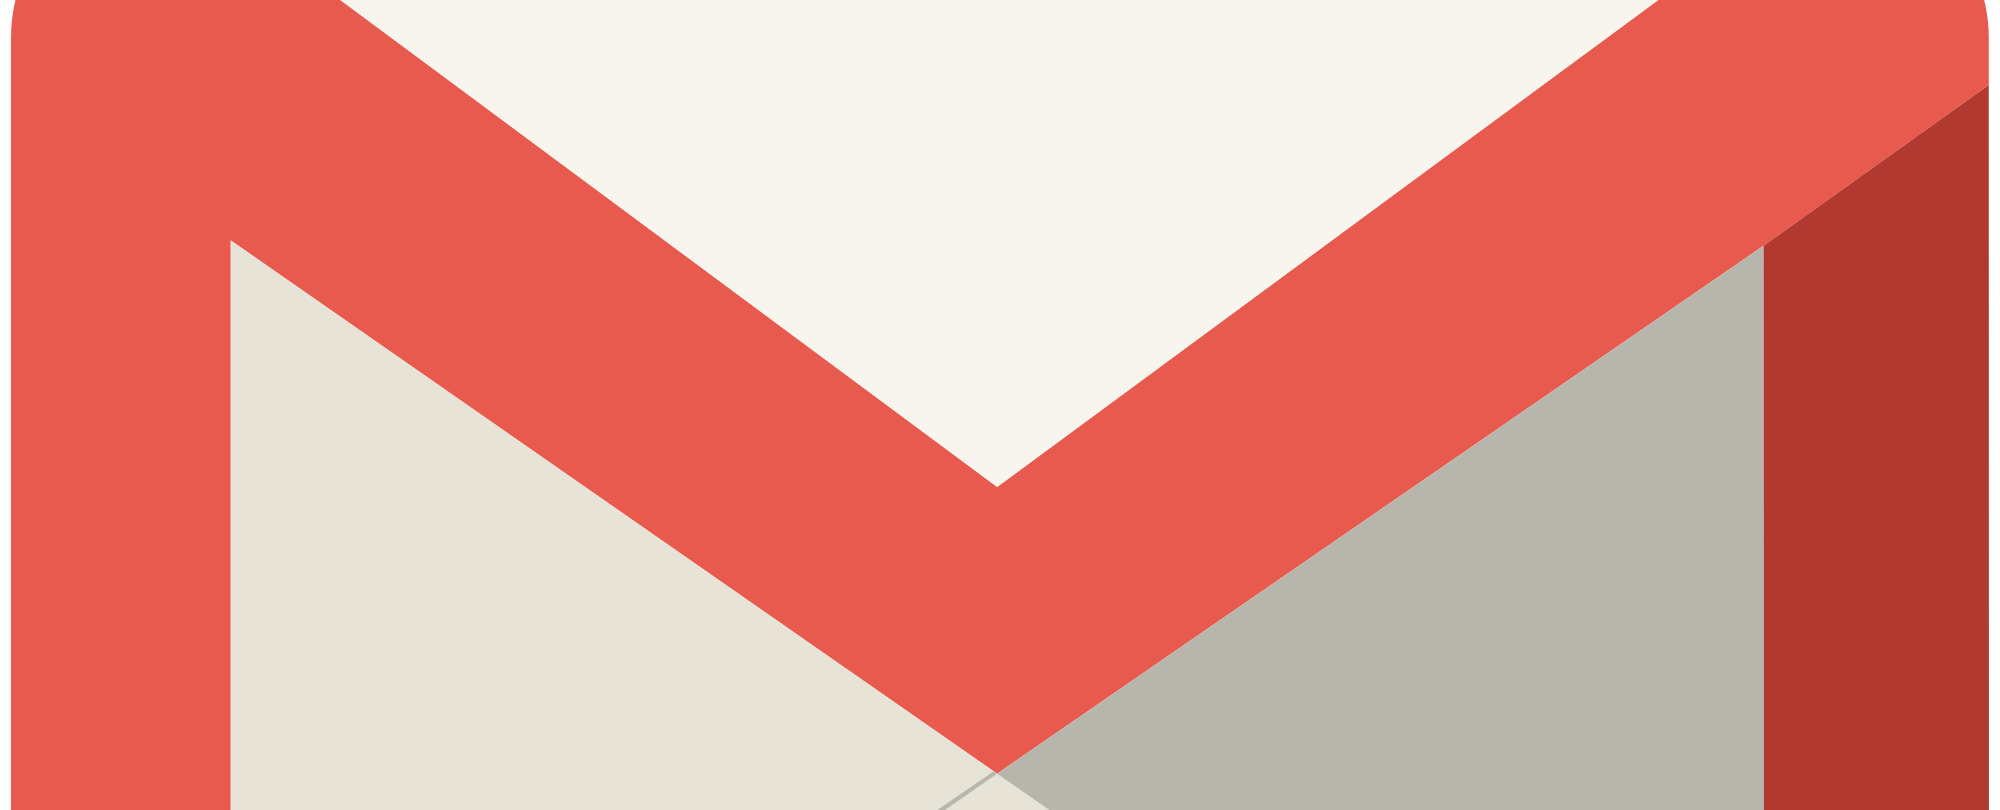 Gmailt használsz? 10 fogás, amiért hálás leszel